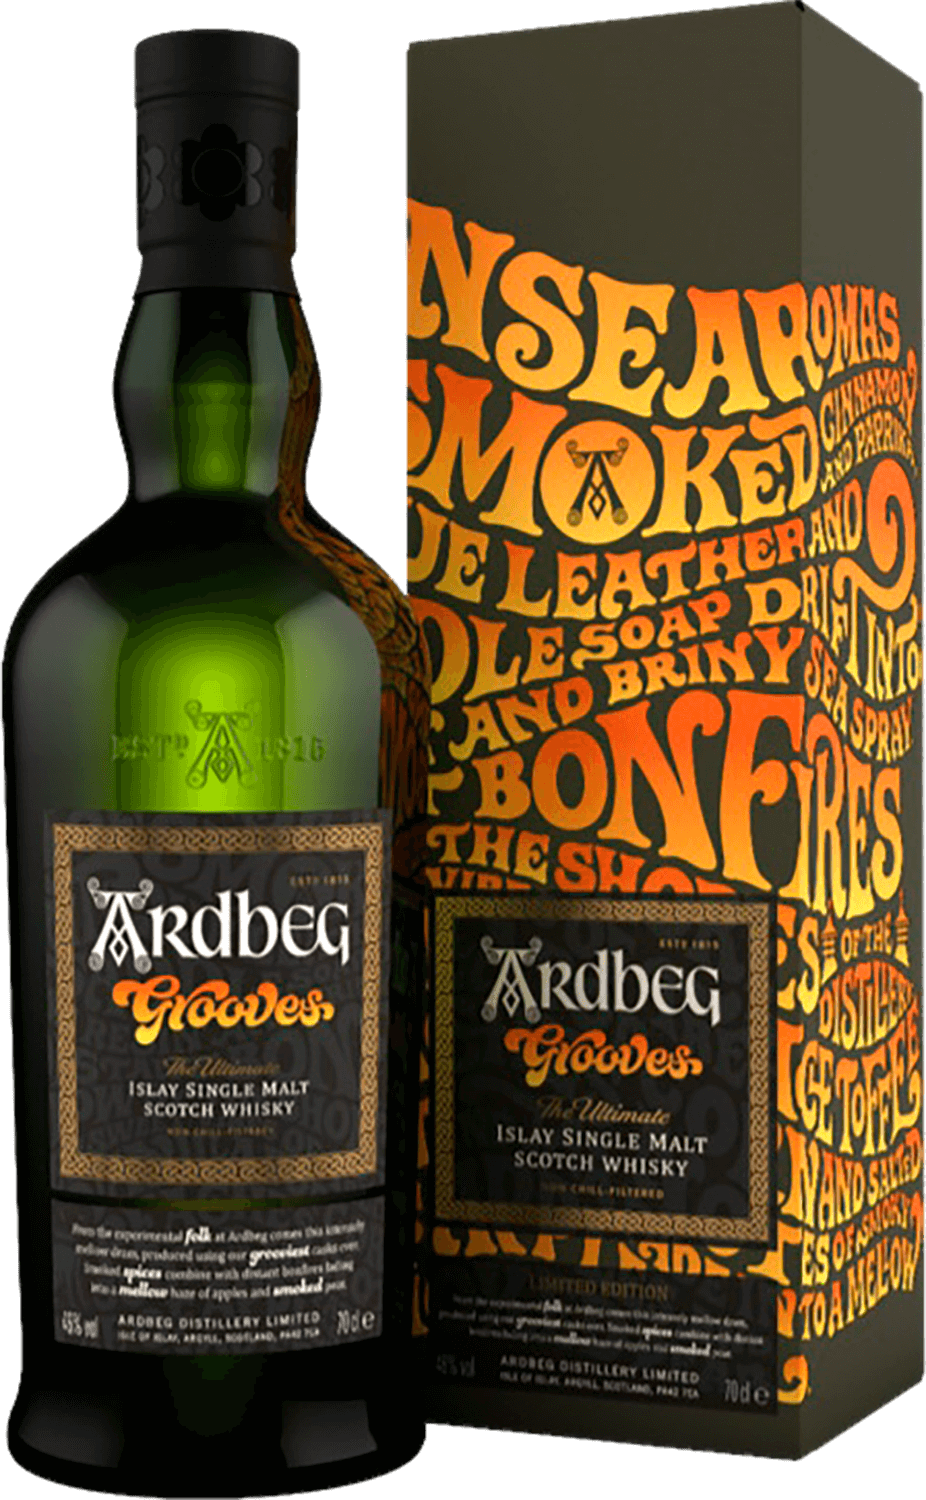 Ardbeg Grooves Islay Single Malt Scotch Whisky (gift box) bunnahabhain stiuireadair islay single malt scotch whisky gift box